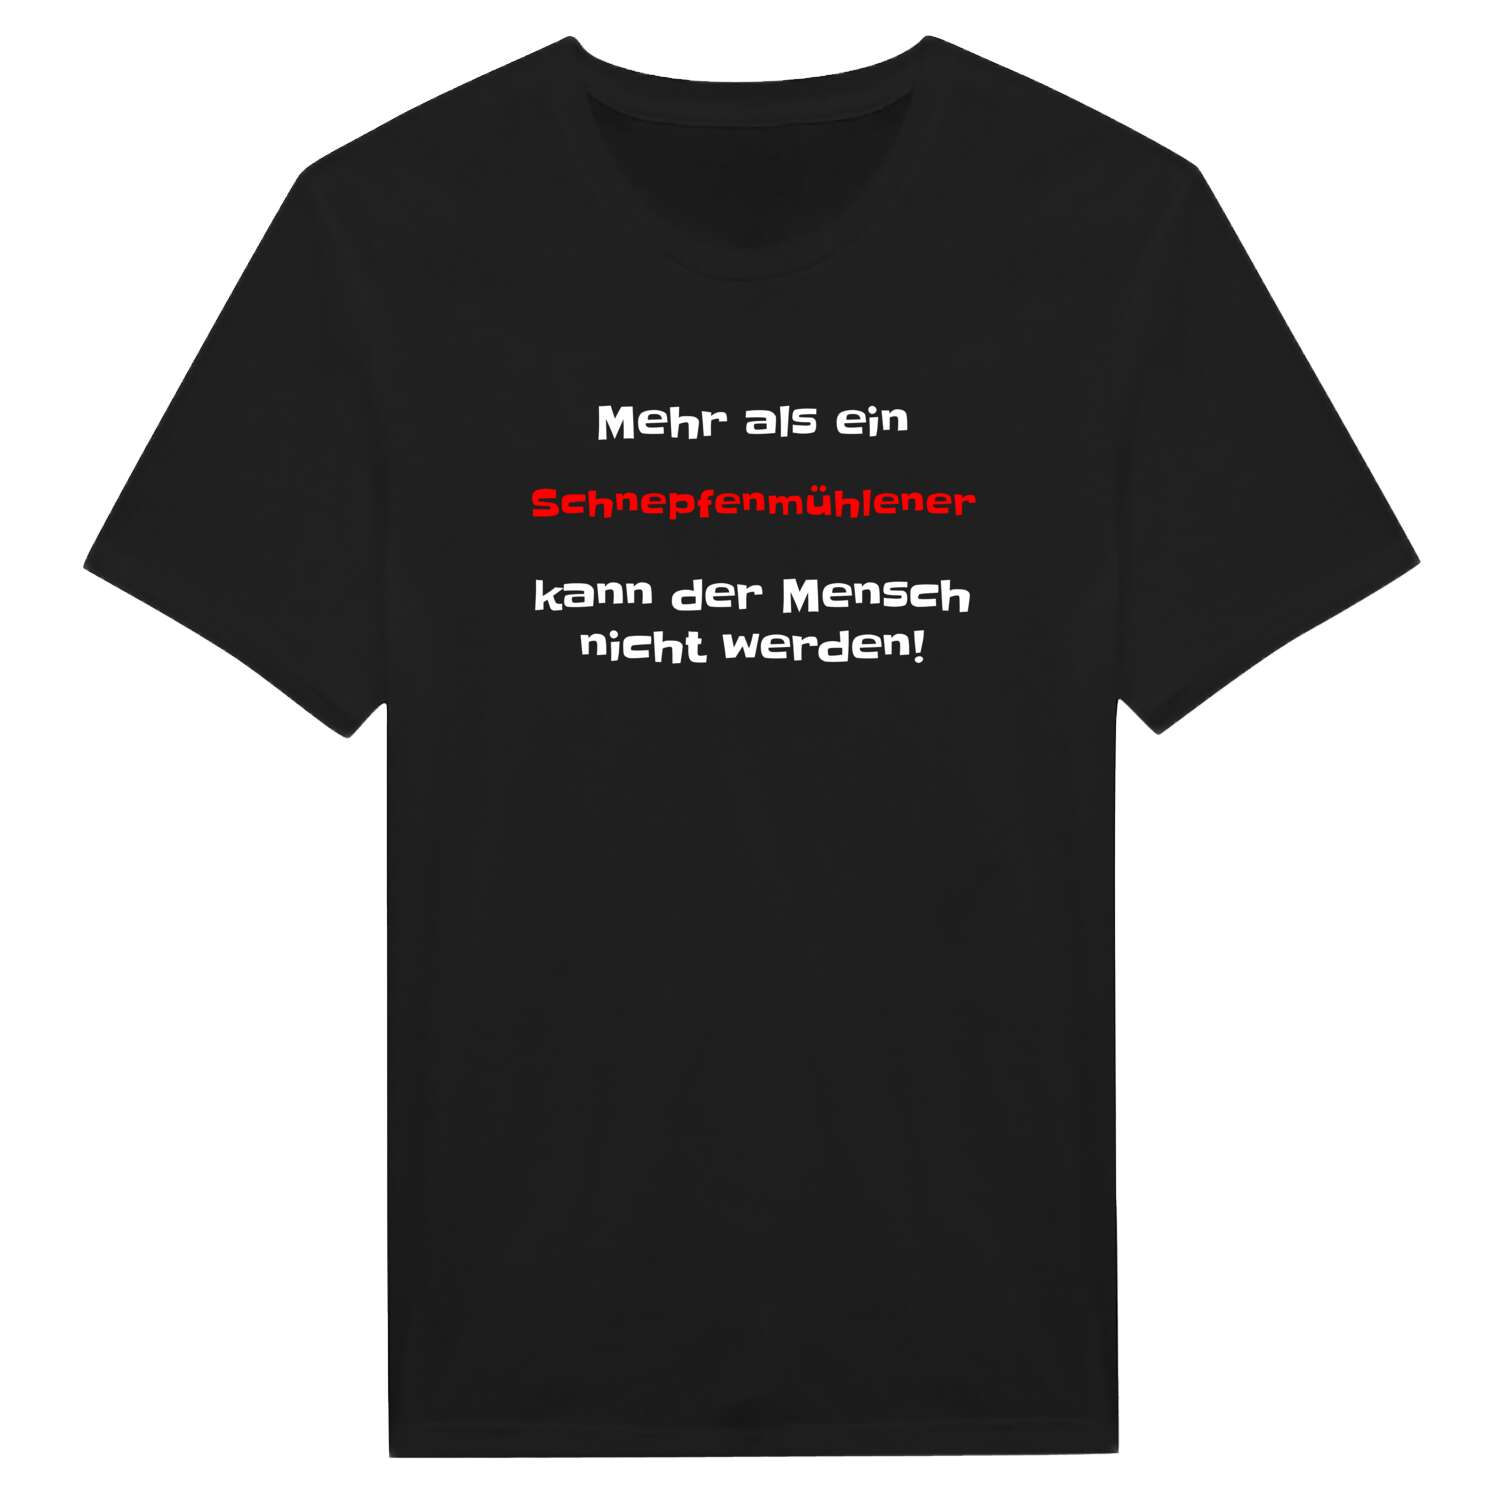 Schnepfenmühle T-Shirt »Mehr als ein«